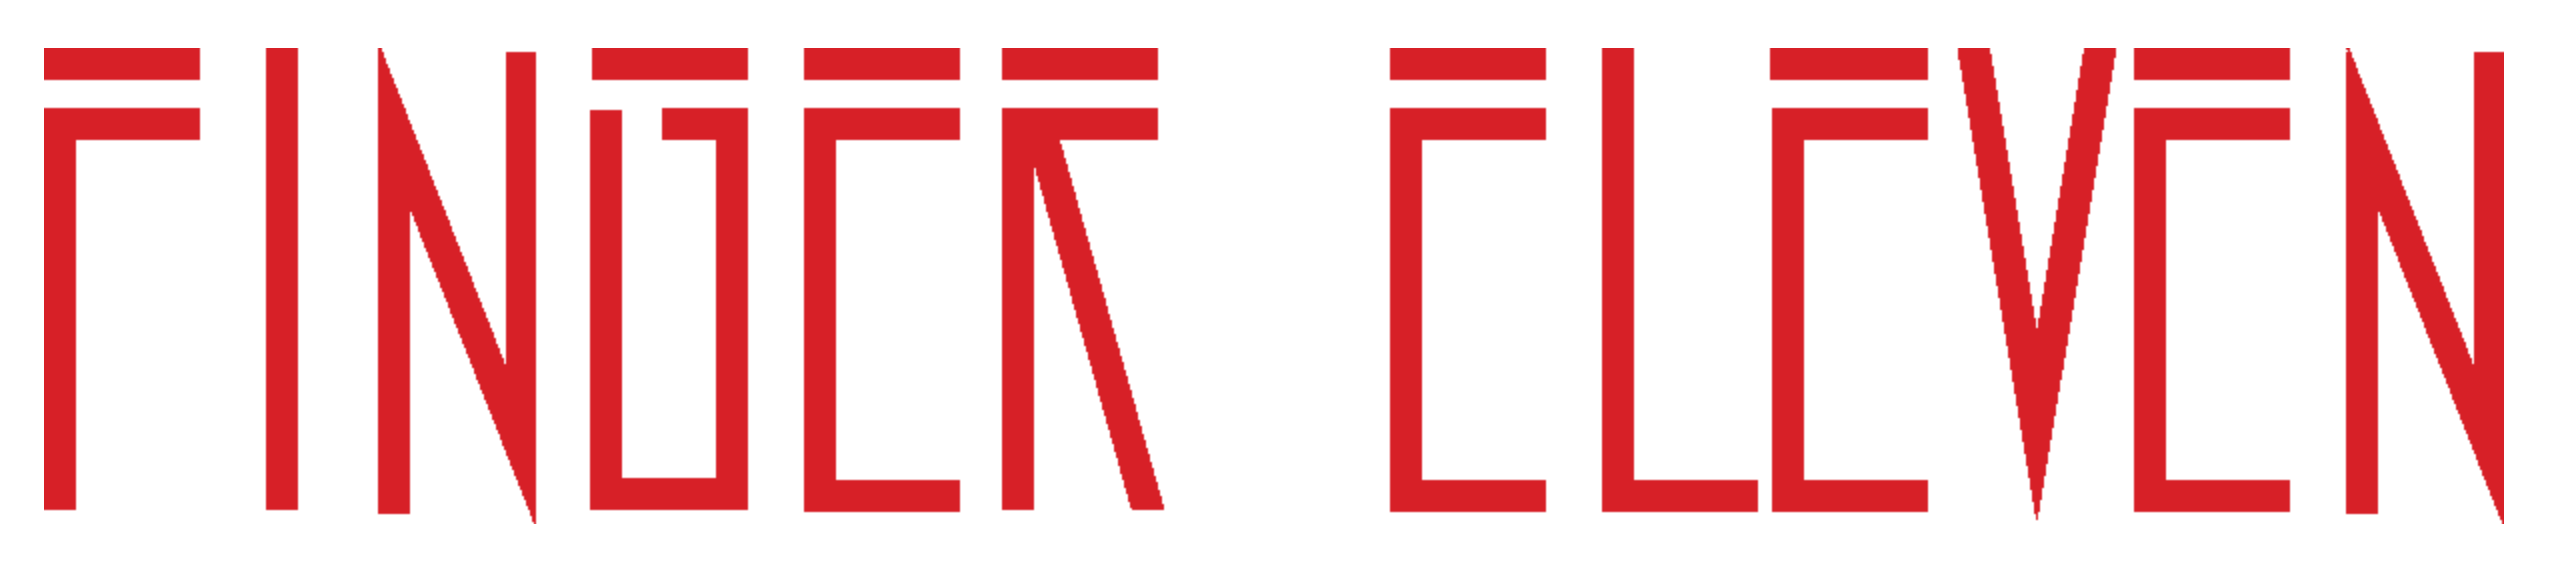 Finger Eleven Logo